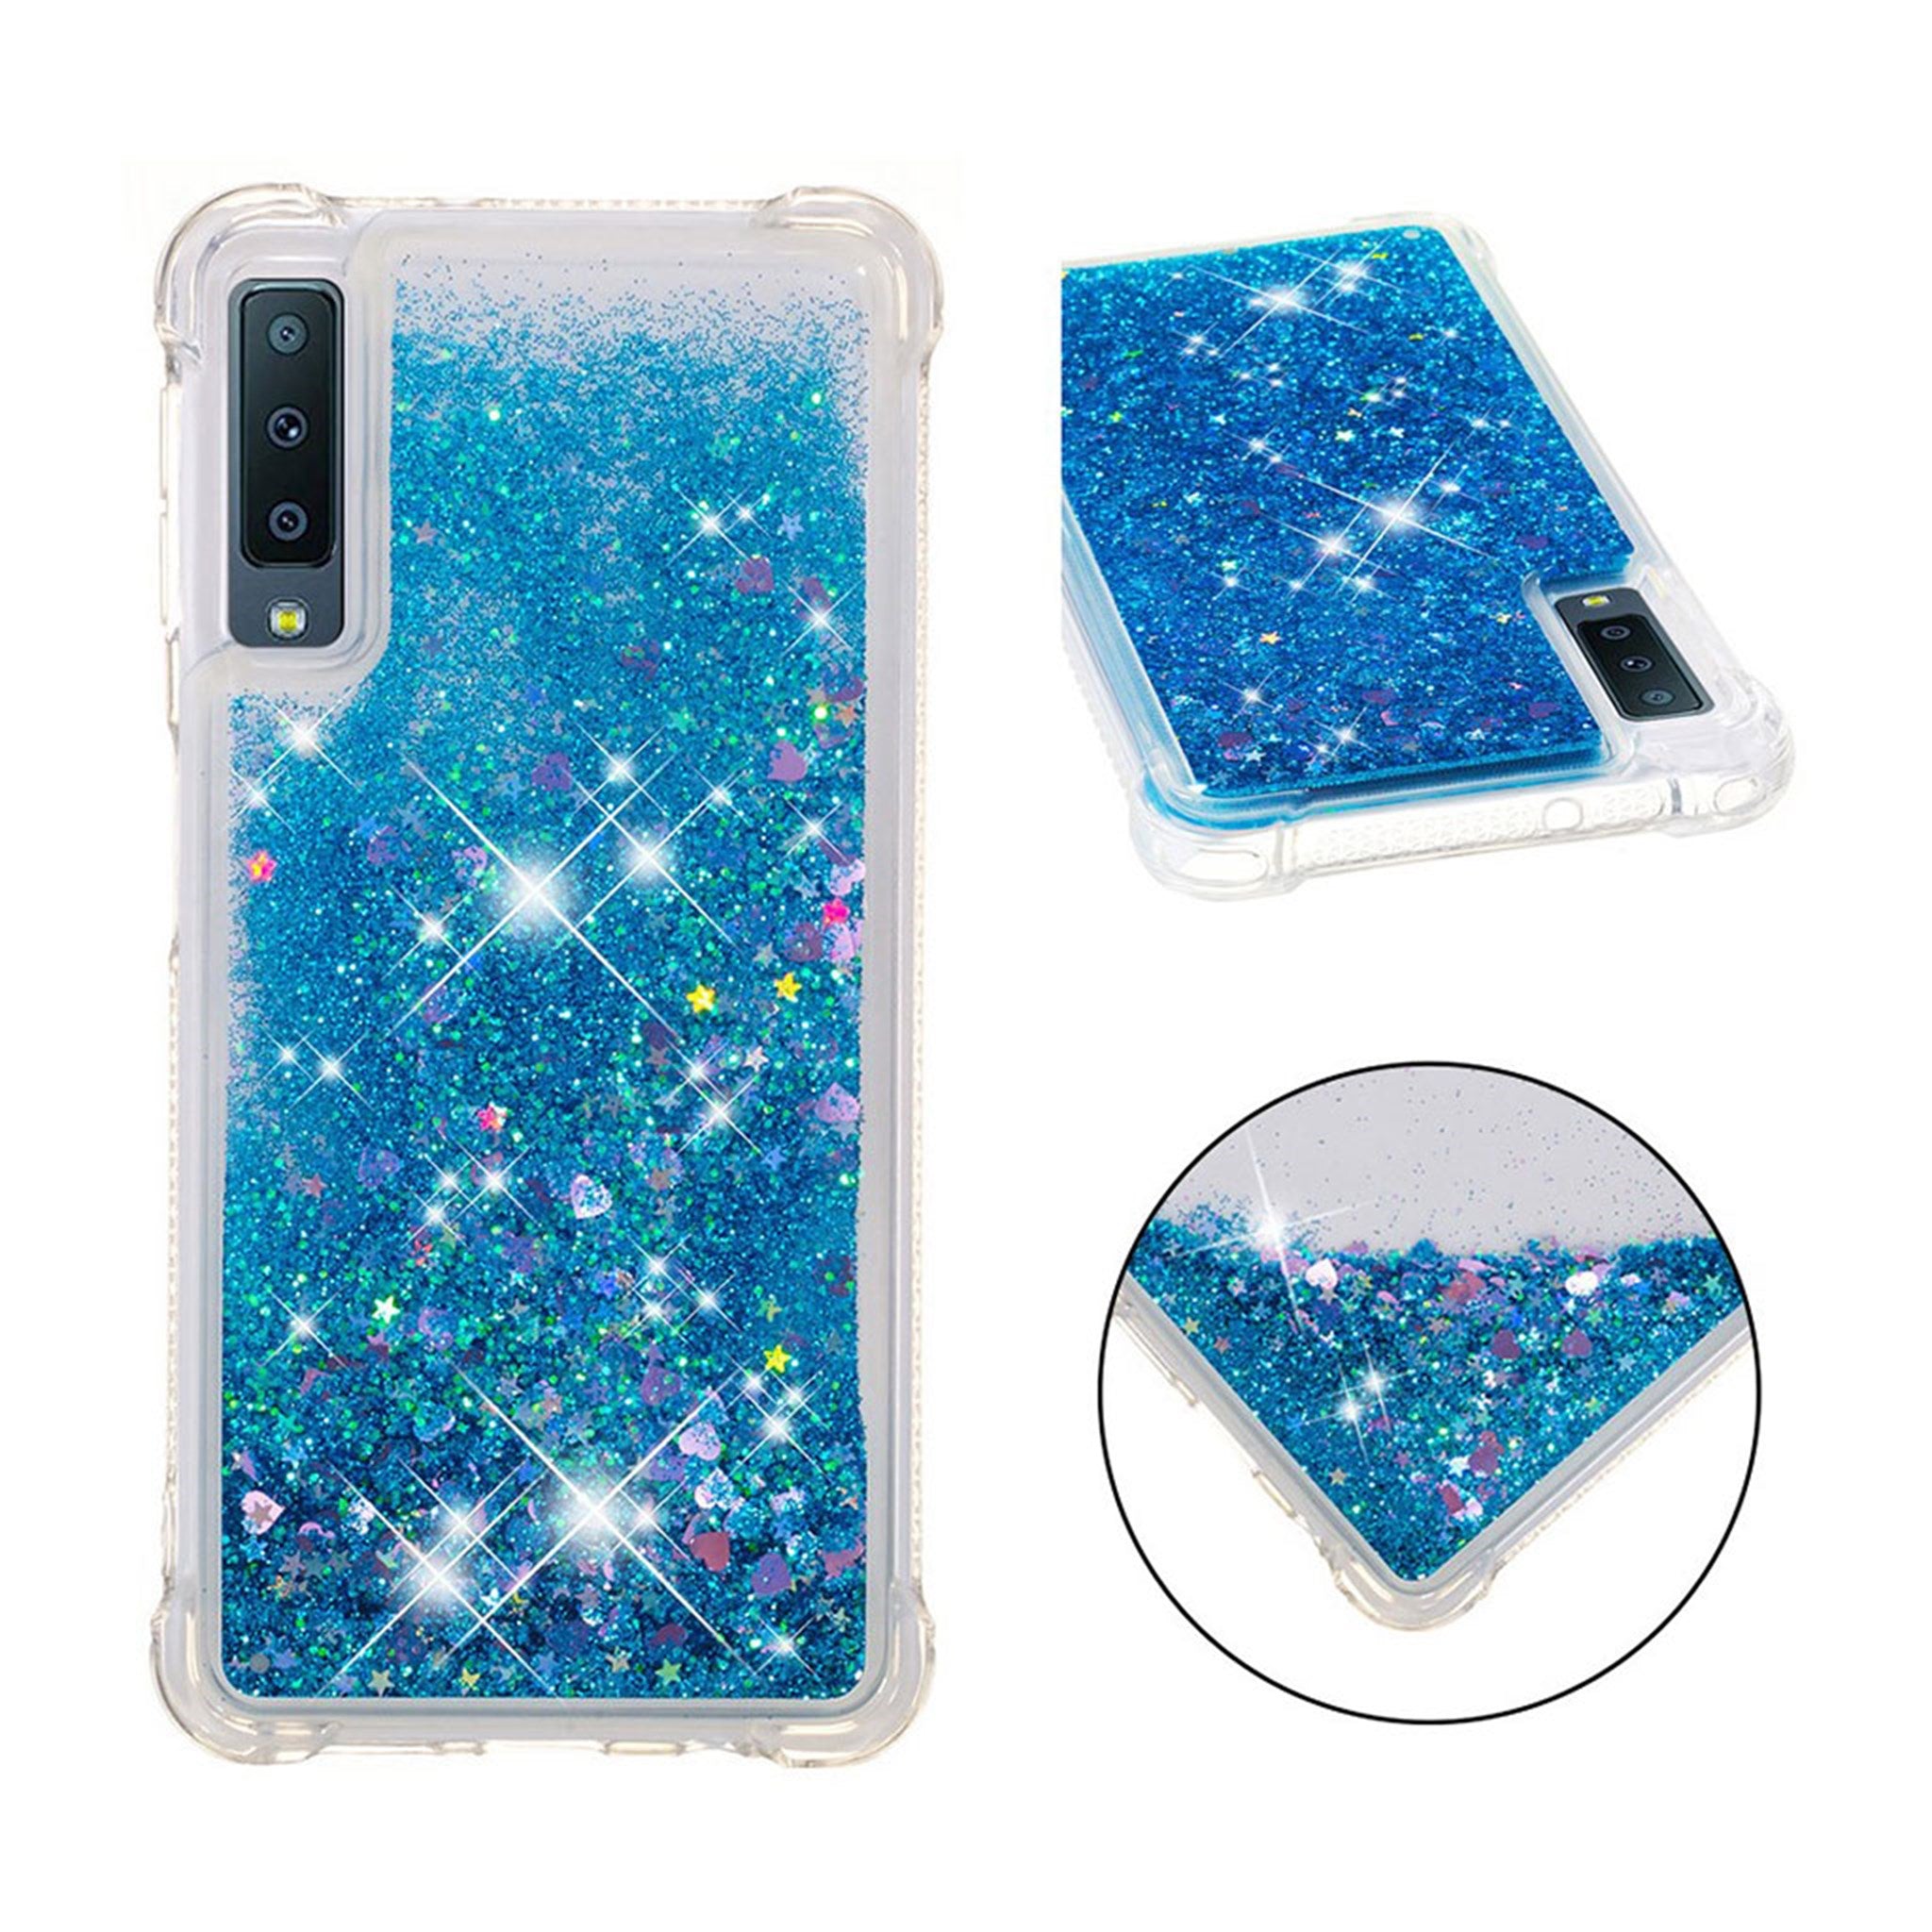 Samsung Galaxy A7 (2018) glitter powder shockproof case - Blue